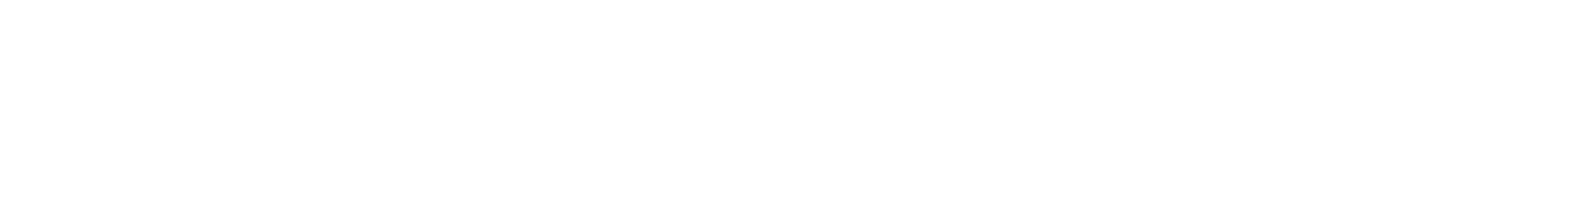 Generation Bio
 logo large for dark backgrounds (transparent PNG)